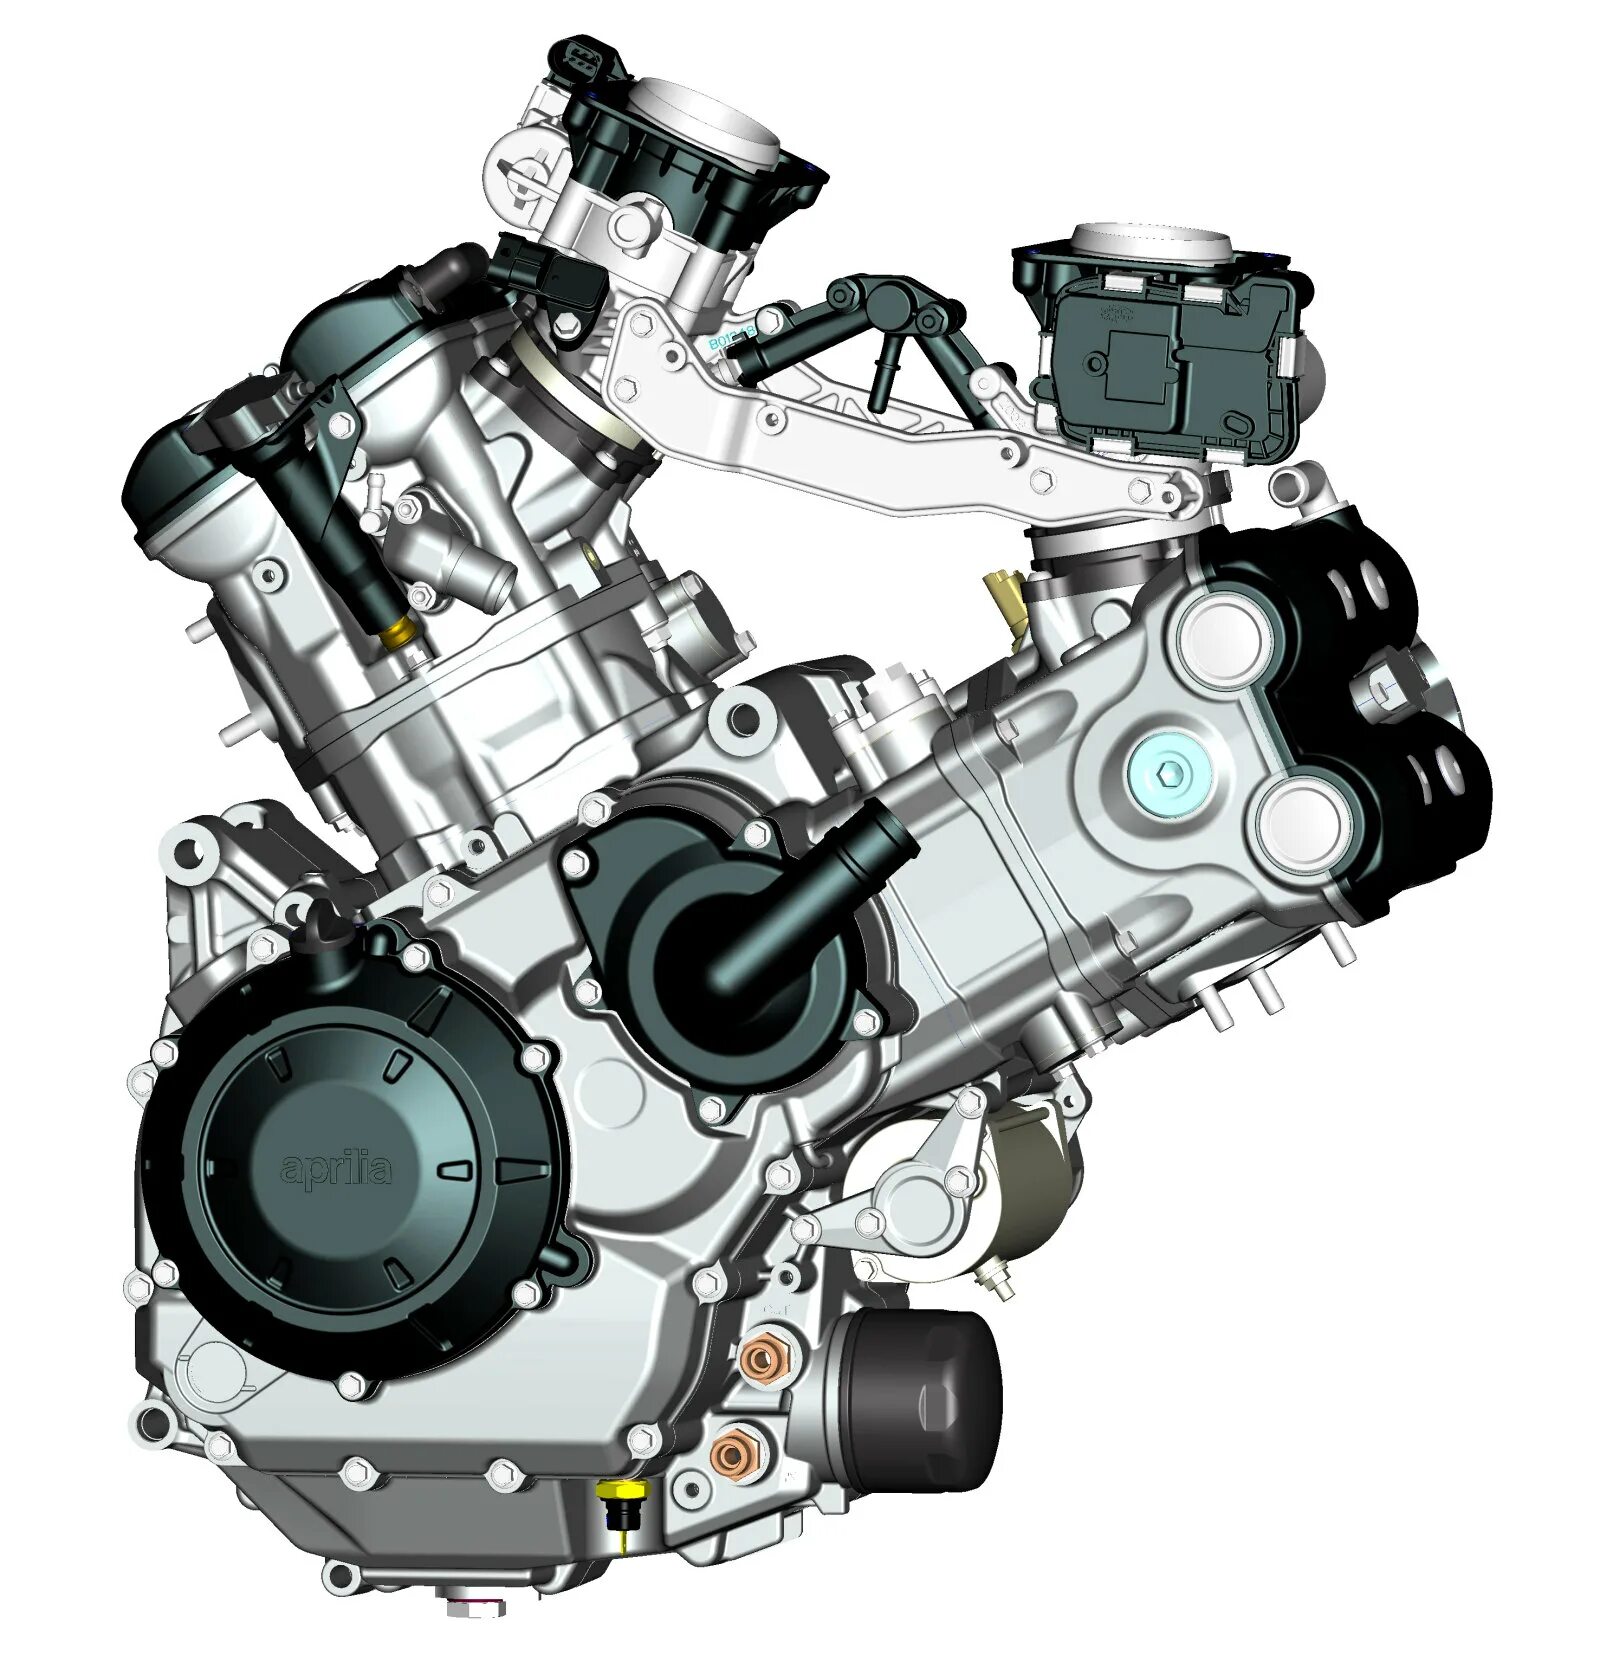 Атс двигатель. Априлия Дорсодуро 1200 схема электрическая.